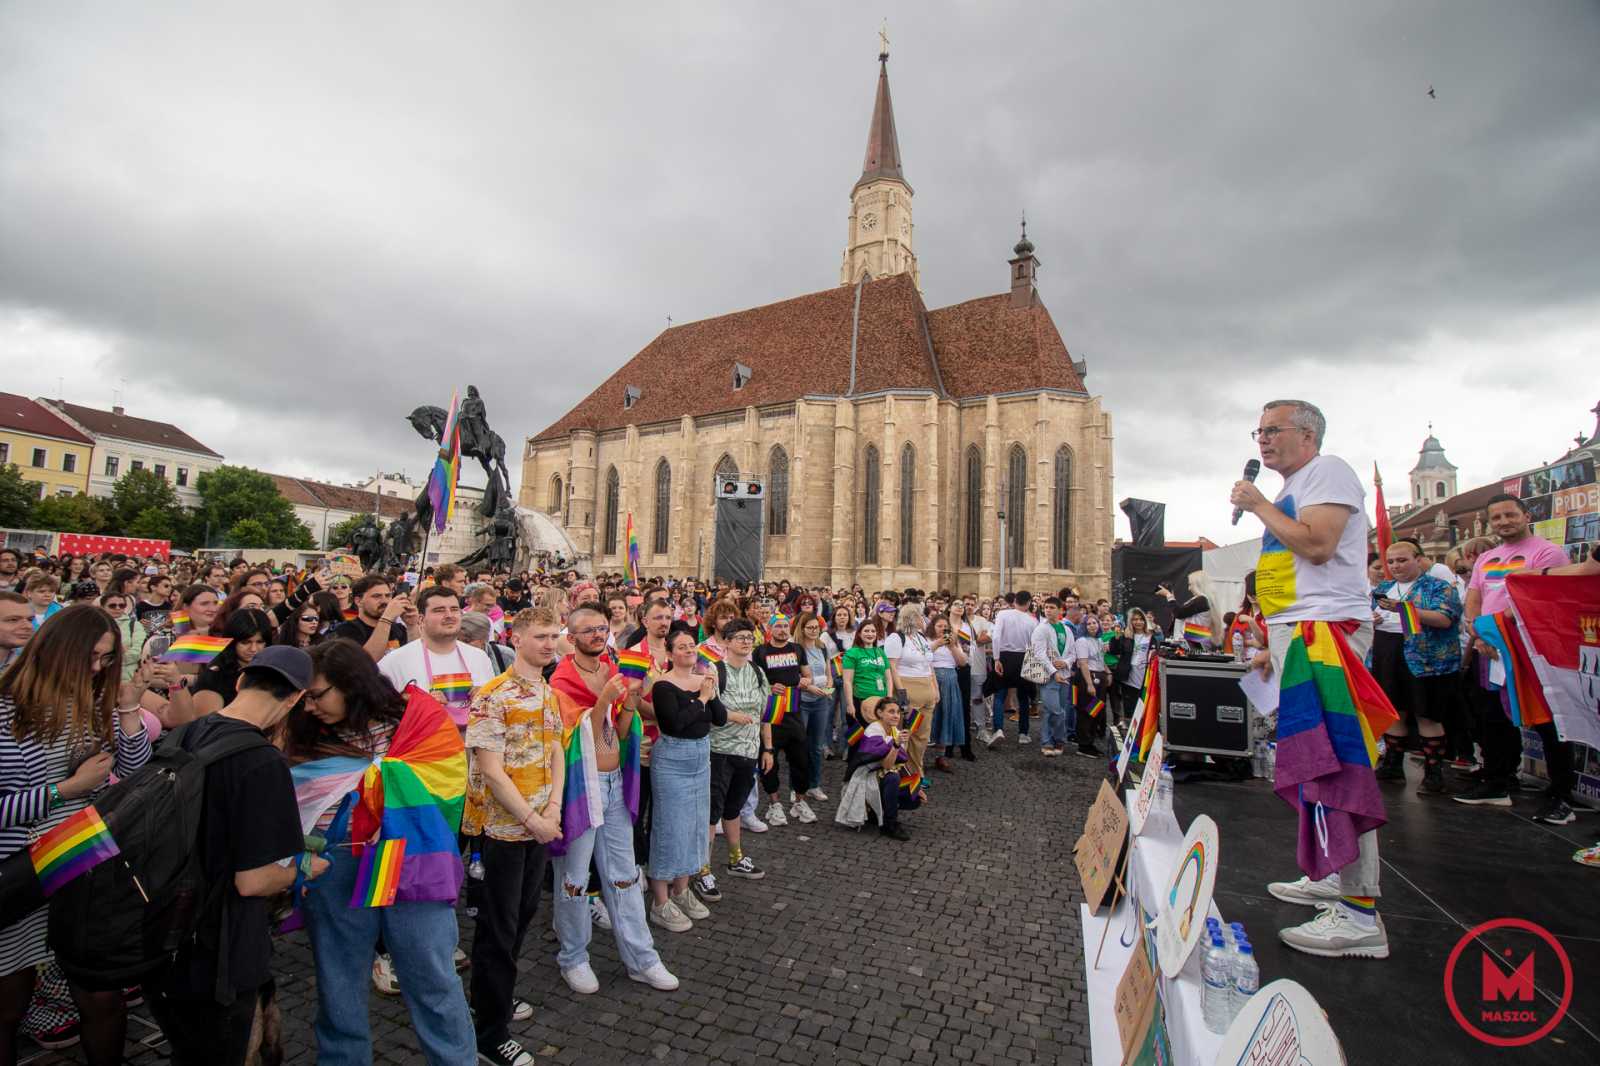 Andreas Wolter, Köln homoszexuális alpolgármestere ezúttal is részt vett a kolozsvári melegfelvonuláson, sőt nagyívű beszédet is mondott. Kolozsvár testvérvárosának vezetője szerint a társadalomnak fel kell nőnie ahhoz, hogy megértsen és megoldjon bizonyos problémákat, ám a szexuális kisebbségek feladata, hogy napirenden tartsák az ügyüket és felébresszék a társadalmat, ezáltal pedig naggyá tegyék Romániát. 